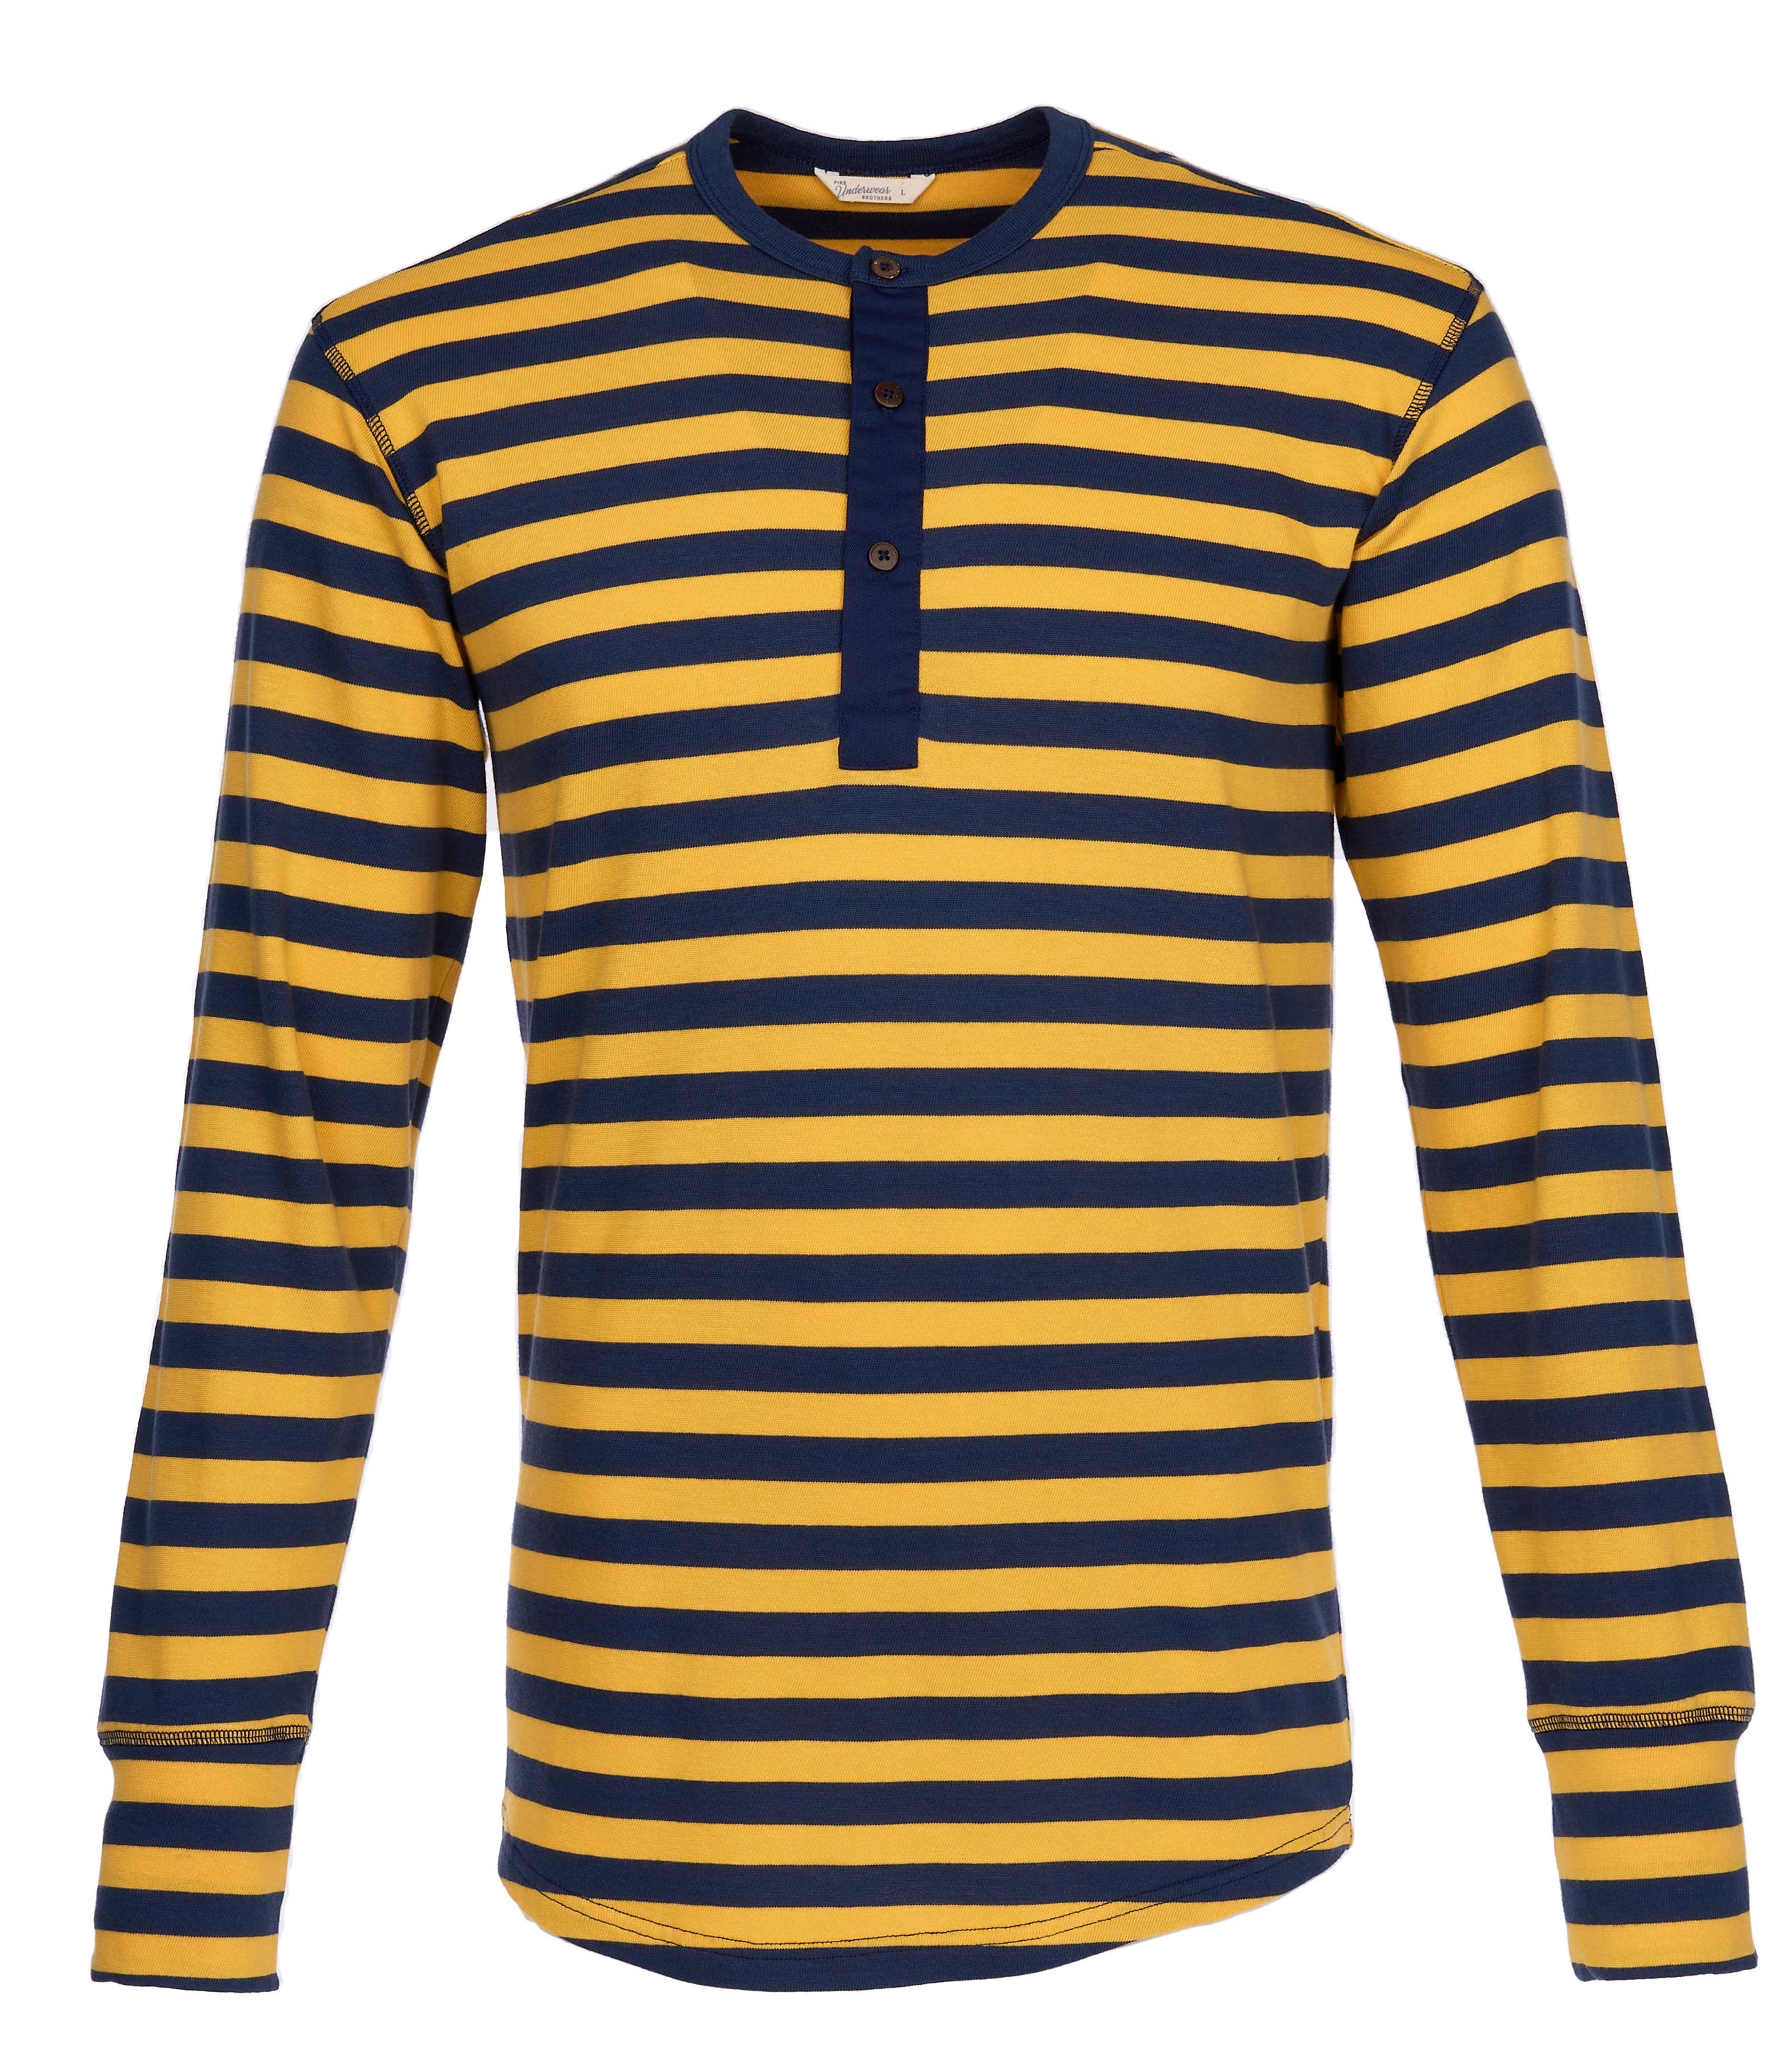 1927 Henley Shirt long sleeve Newport yellow